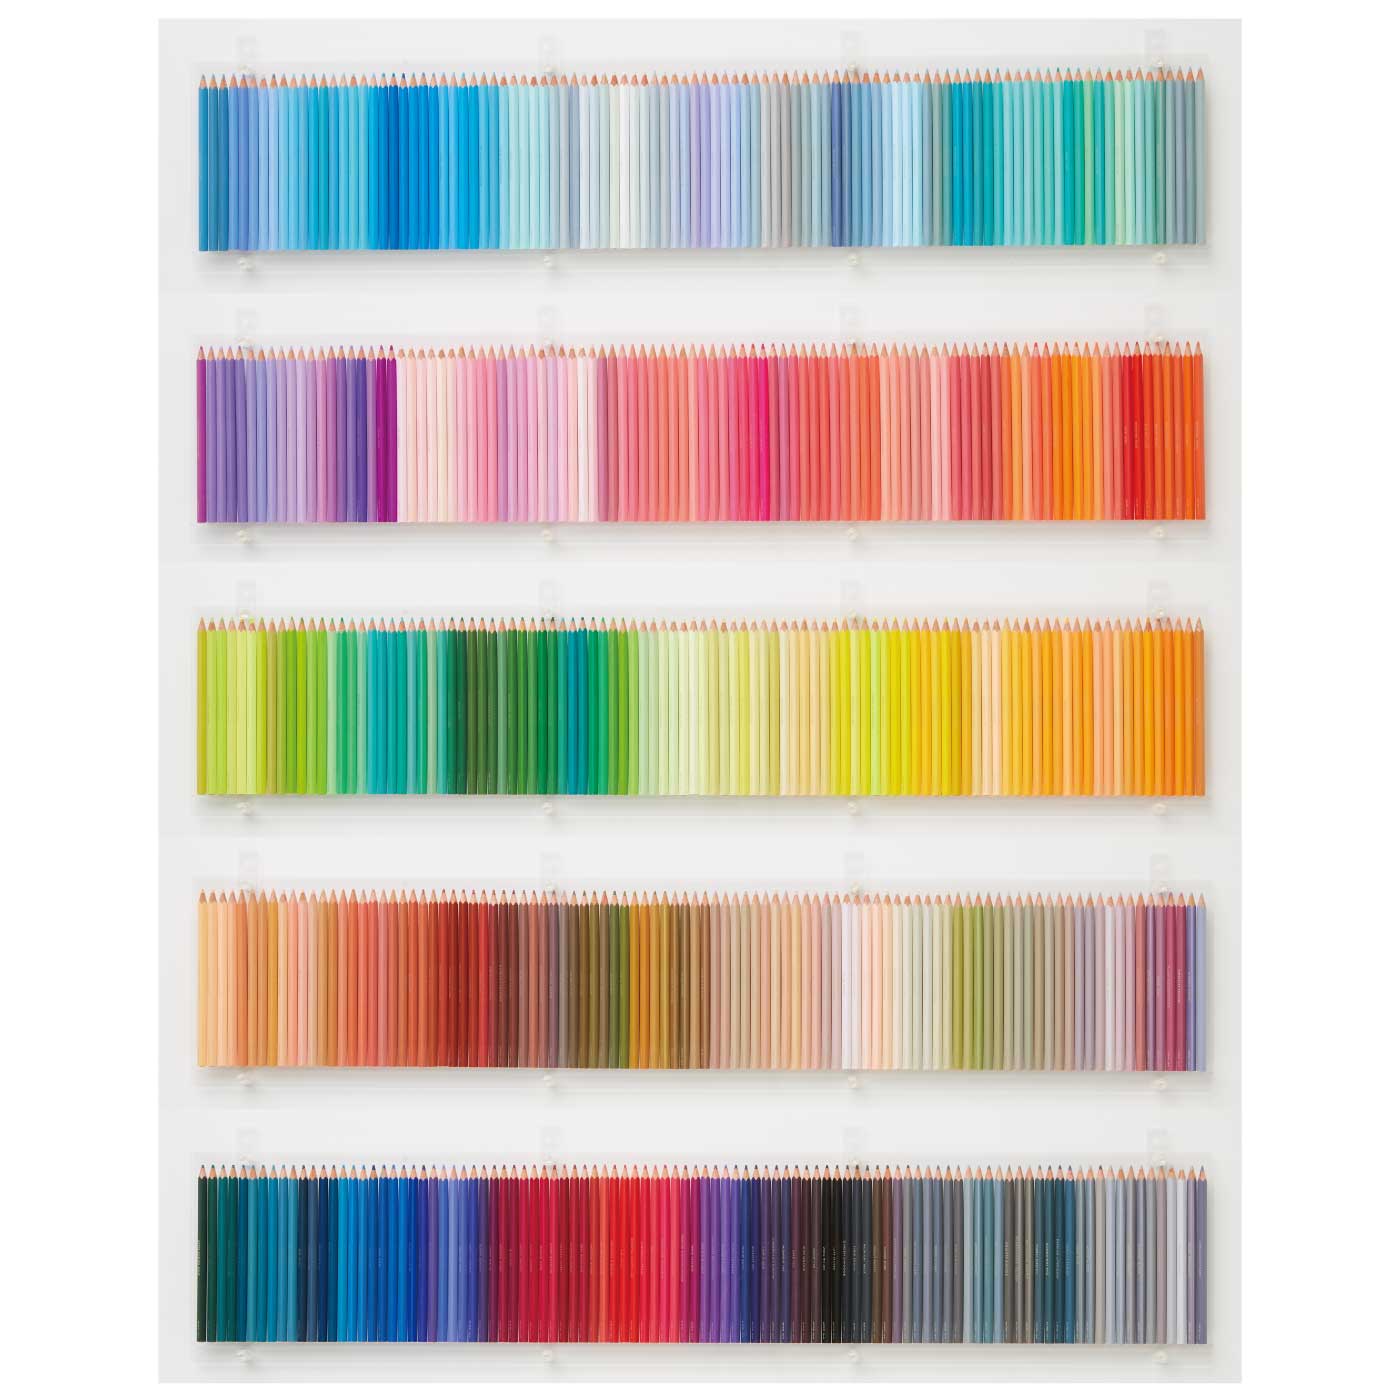 芸能人愛用 フェリシモ 500色の色鉛筆 全色セット 画材